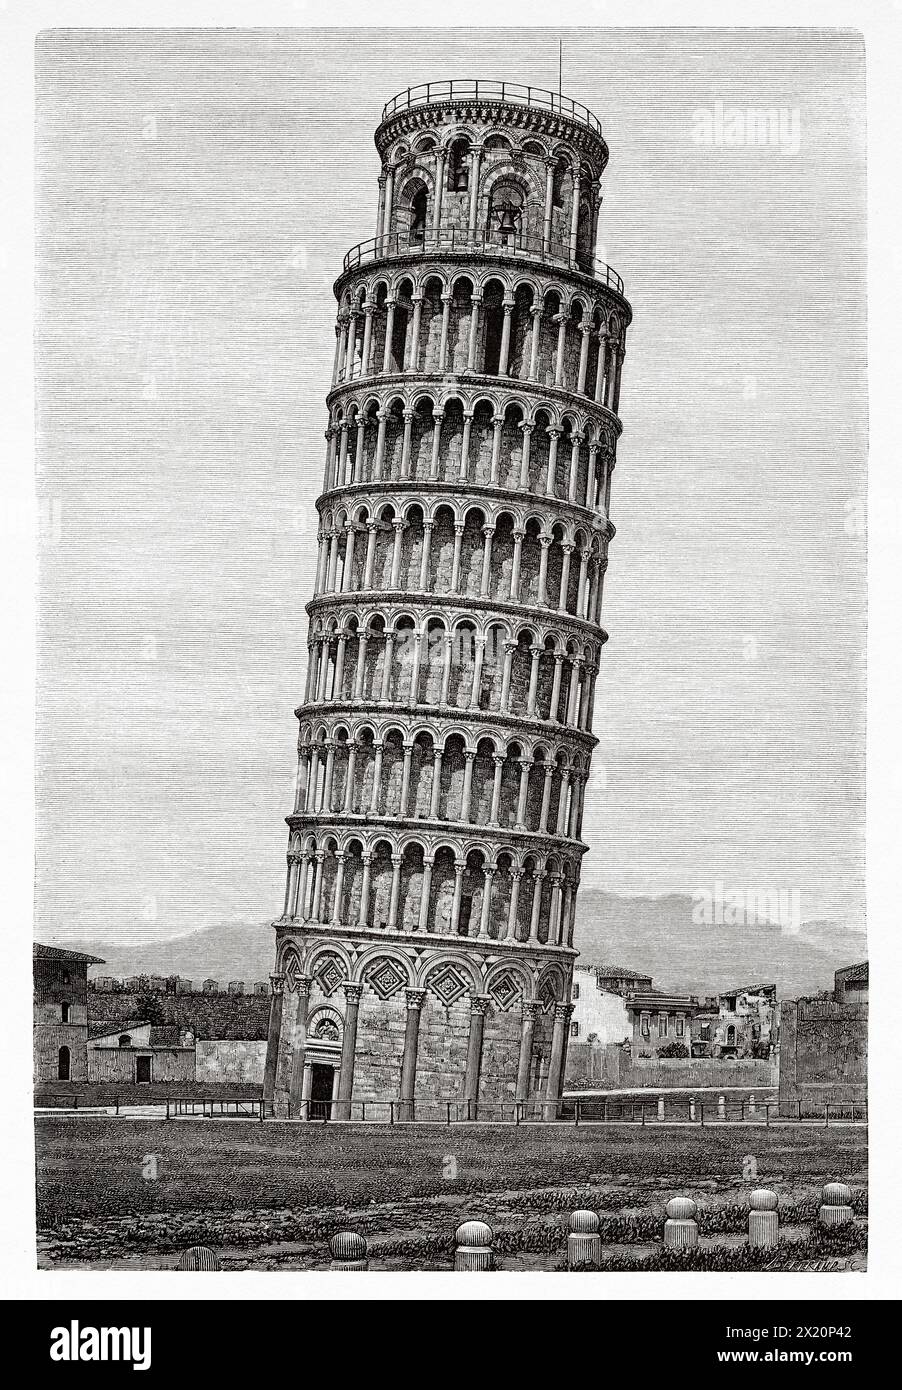 Der Schiefe Turm von Pisa ist der Glockenturm der Kathedrale von Pisa, der sich auf der Piazza del Duomo in Pisa befindet. Toskana, Italien. Europa. Zeichnung von Albert Bertrand (1854 - 1912) Reise durch die Toskana 1881 von Eugene Muntz (1845 - 1902) Le Tour du Monde 1886 Stockfoto